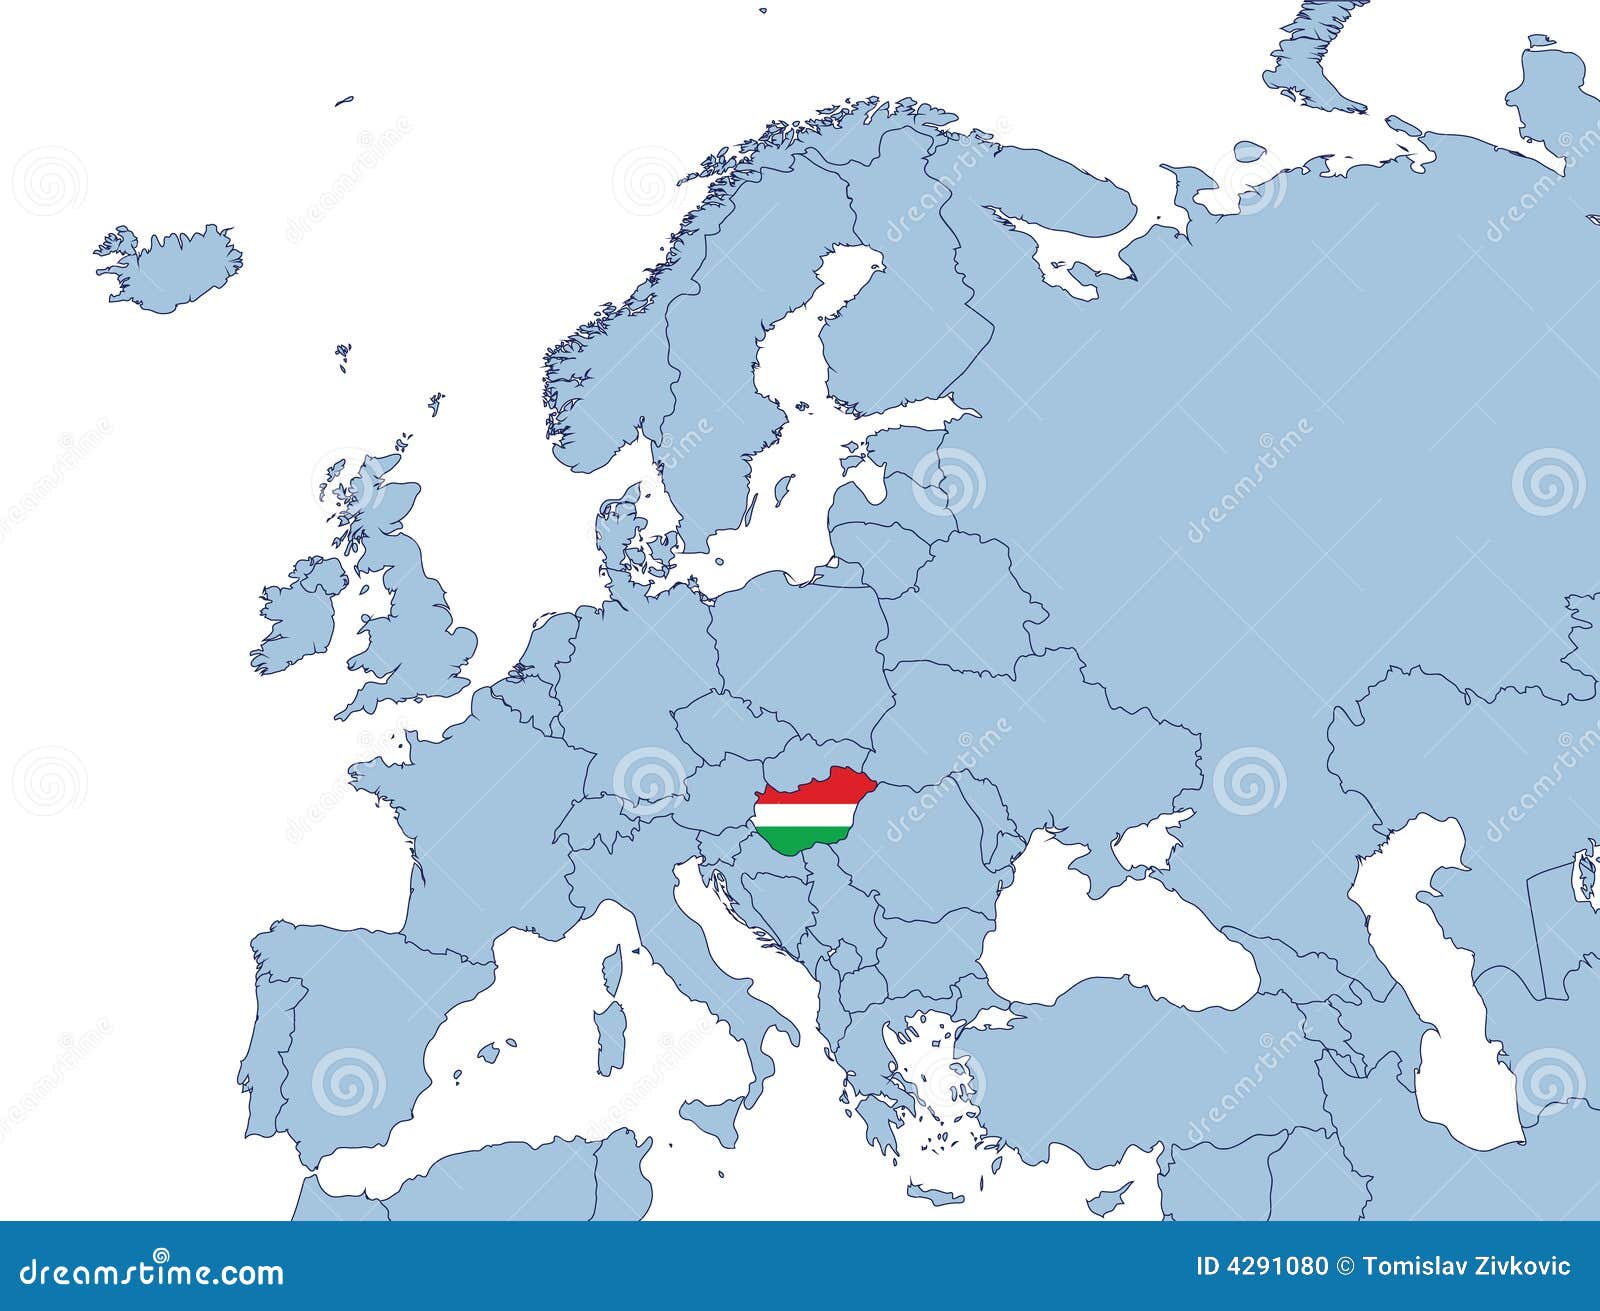  Ungarn  auf Europa  Karte vektor abbildung Illustration von 